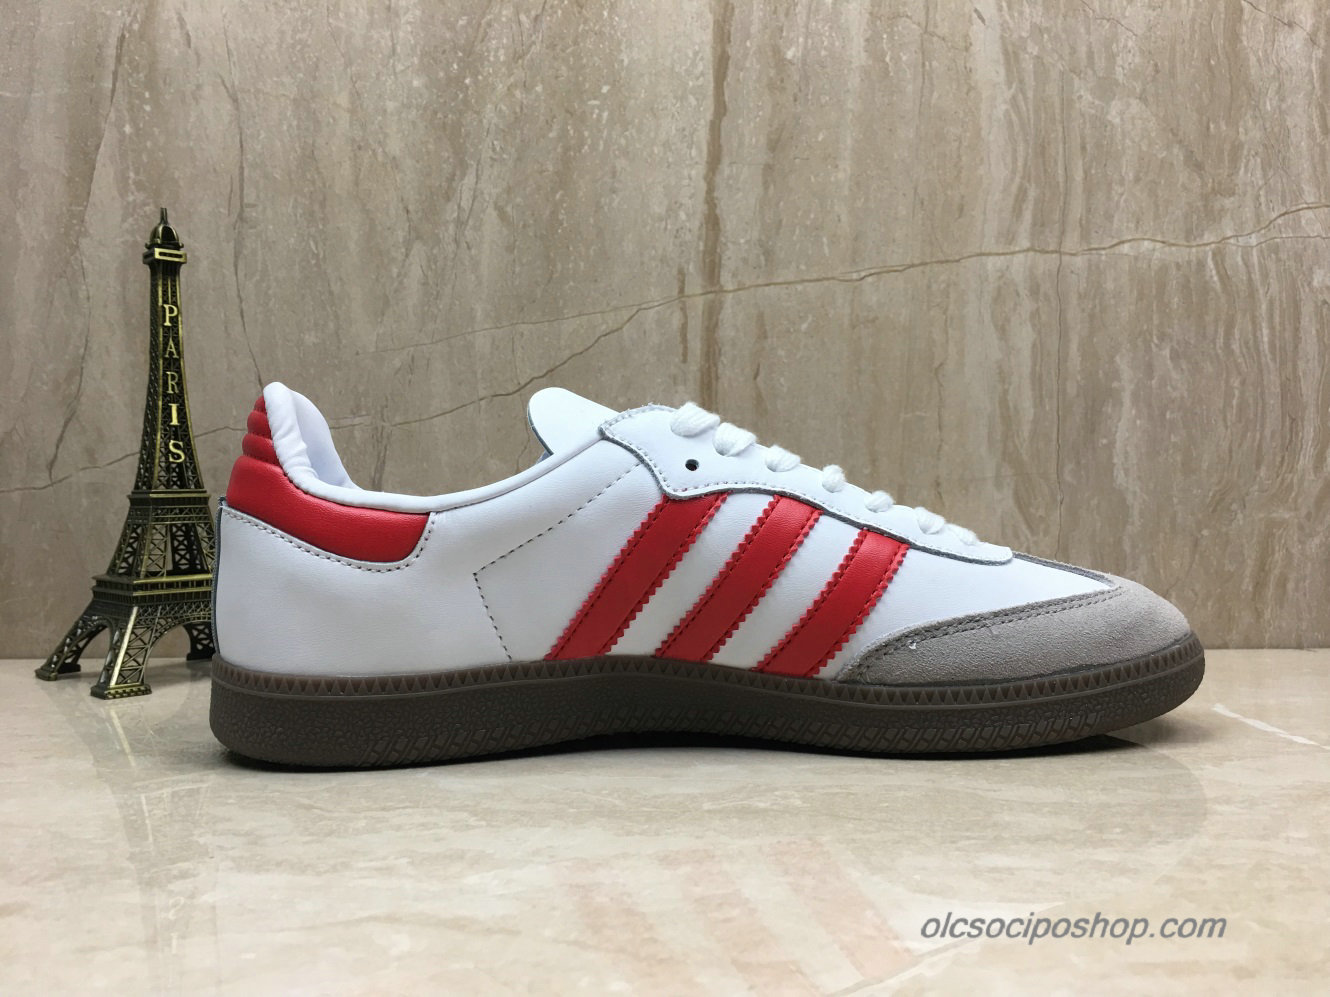 Adidas Samba OG Fehér/Piros/Szürke Cipők (B44628) - Kattintásra bezárul